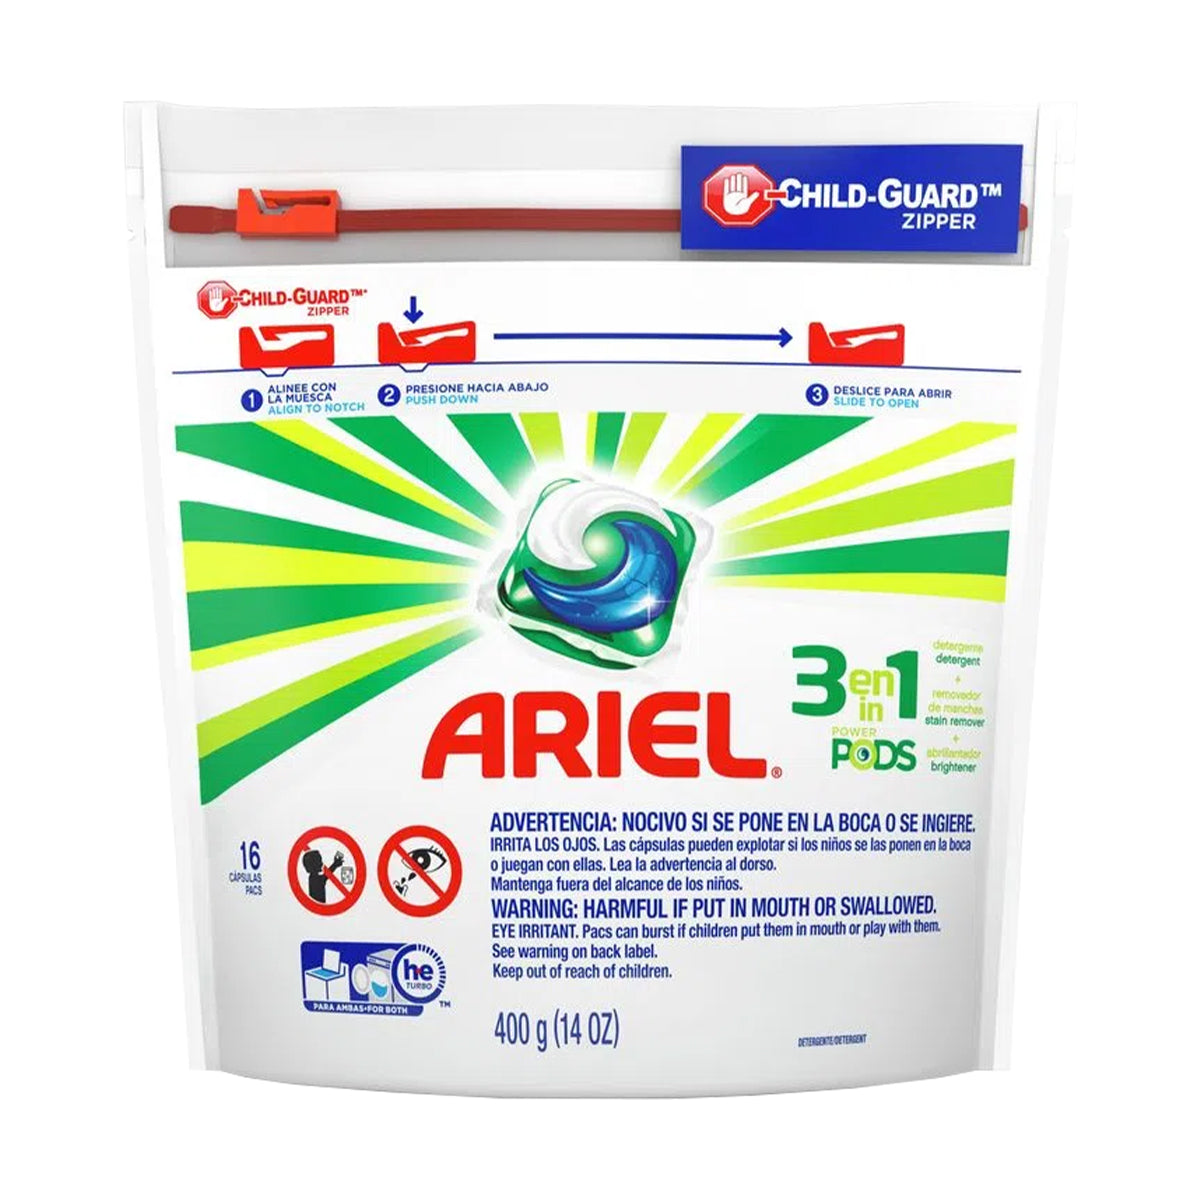 Detergente para ropa en cápsulas 3 en 1 Ariel PODS